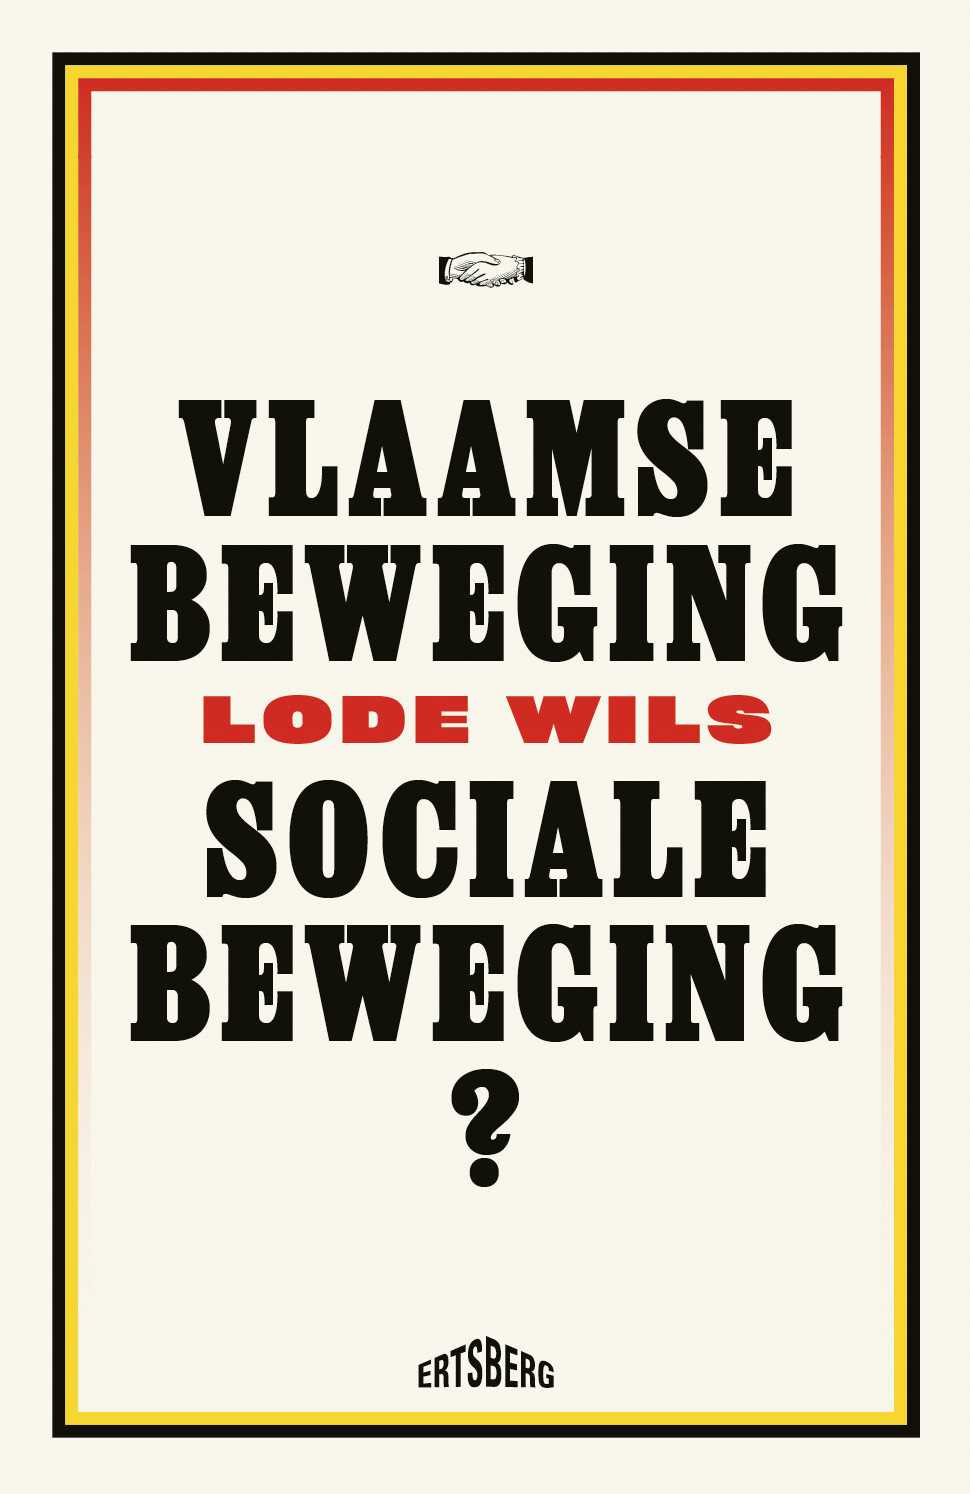 Vlaamse beweging, sociale beweging?